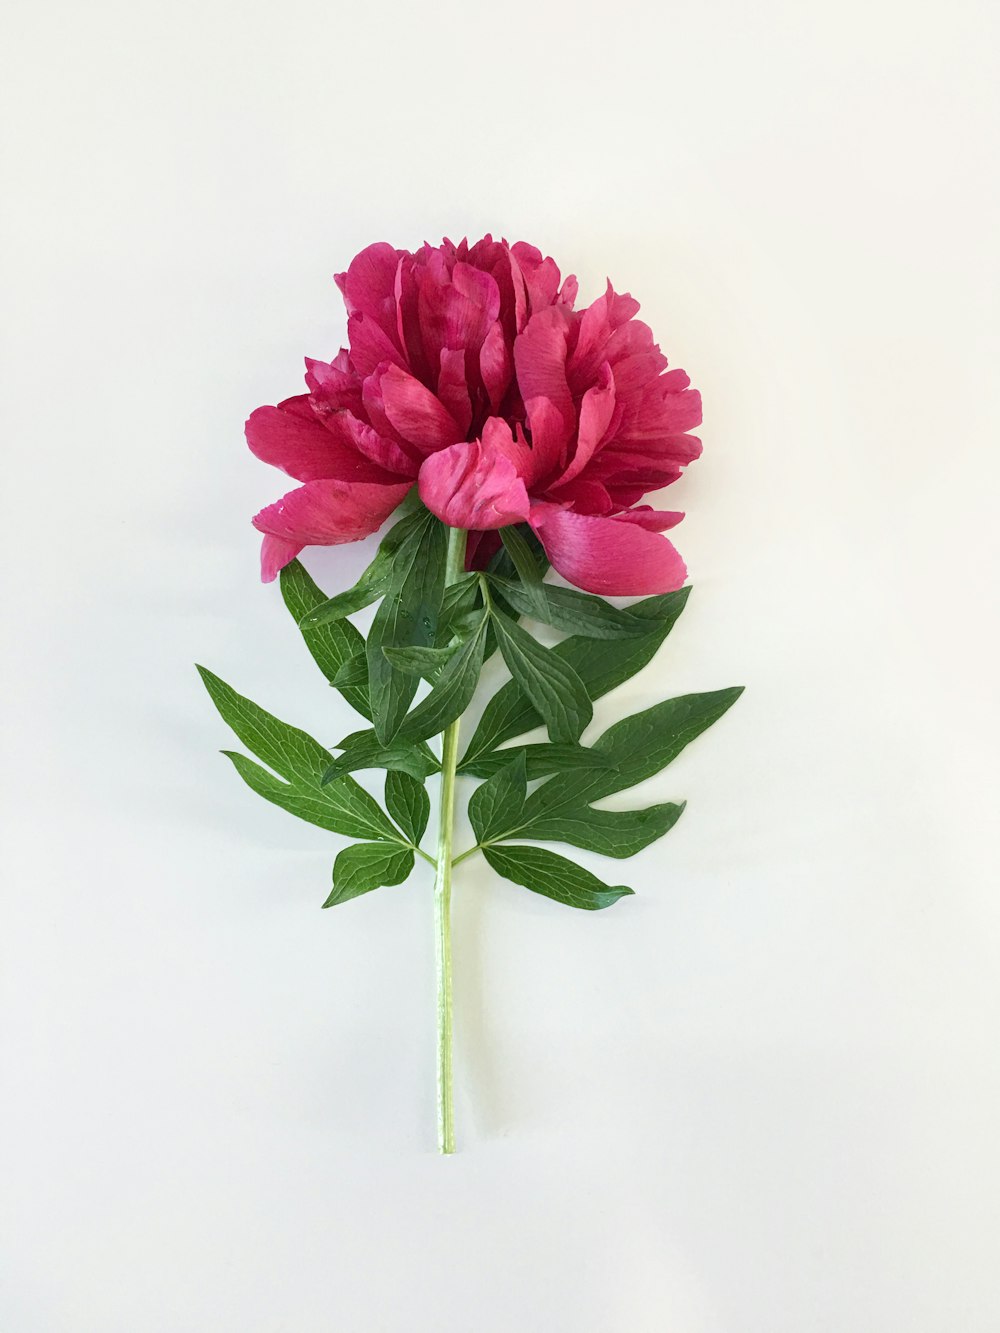 flor cor-de-rosa na superfície branca